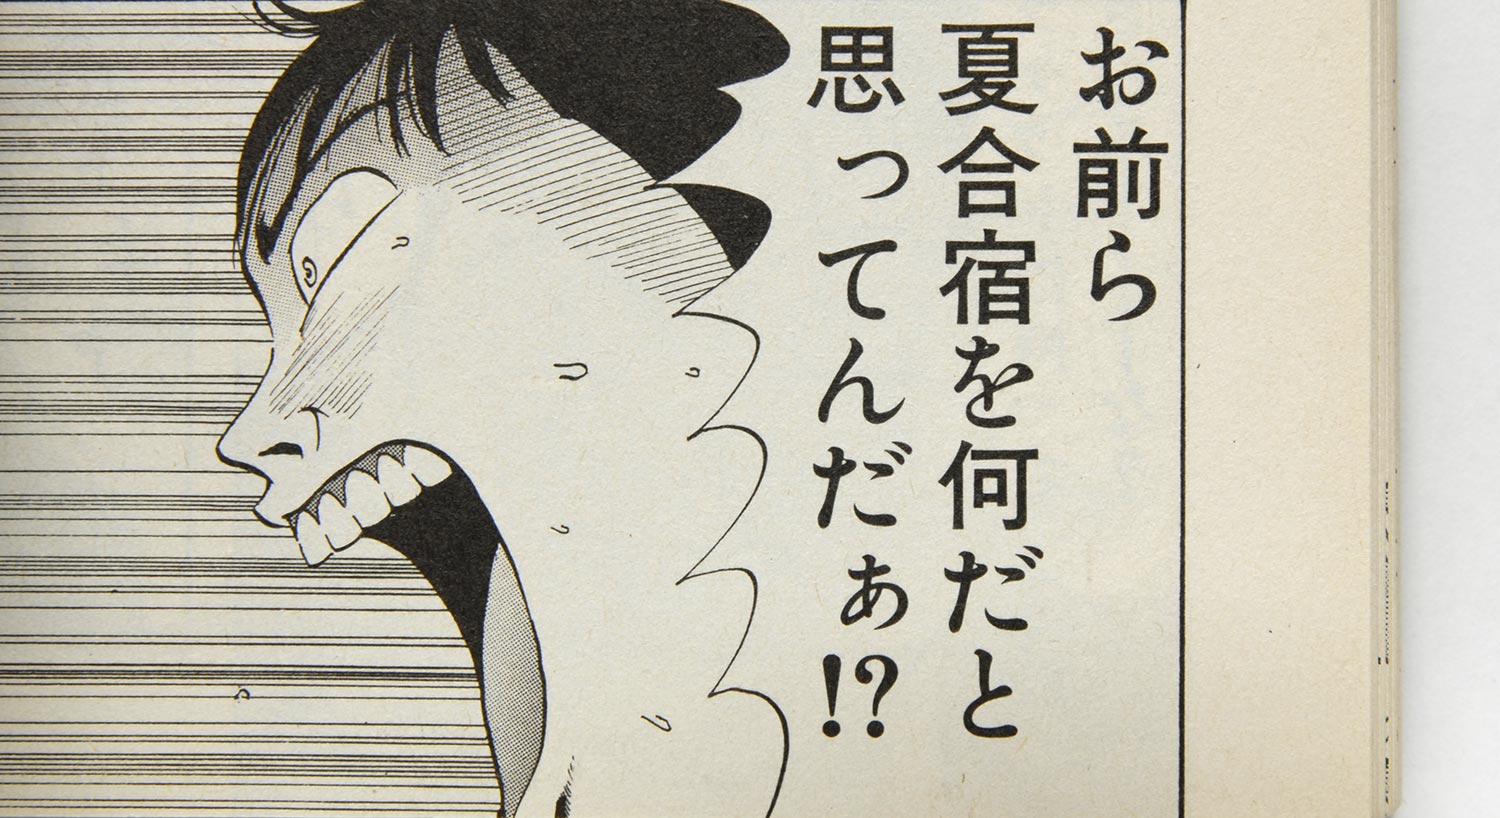 Japanische Typografie in Manga